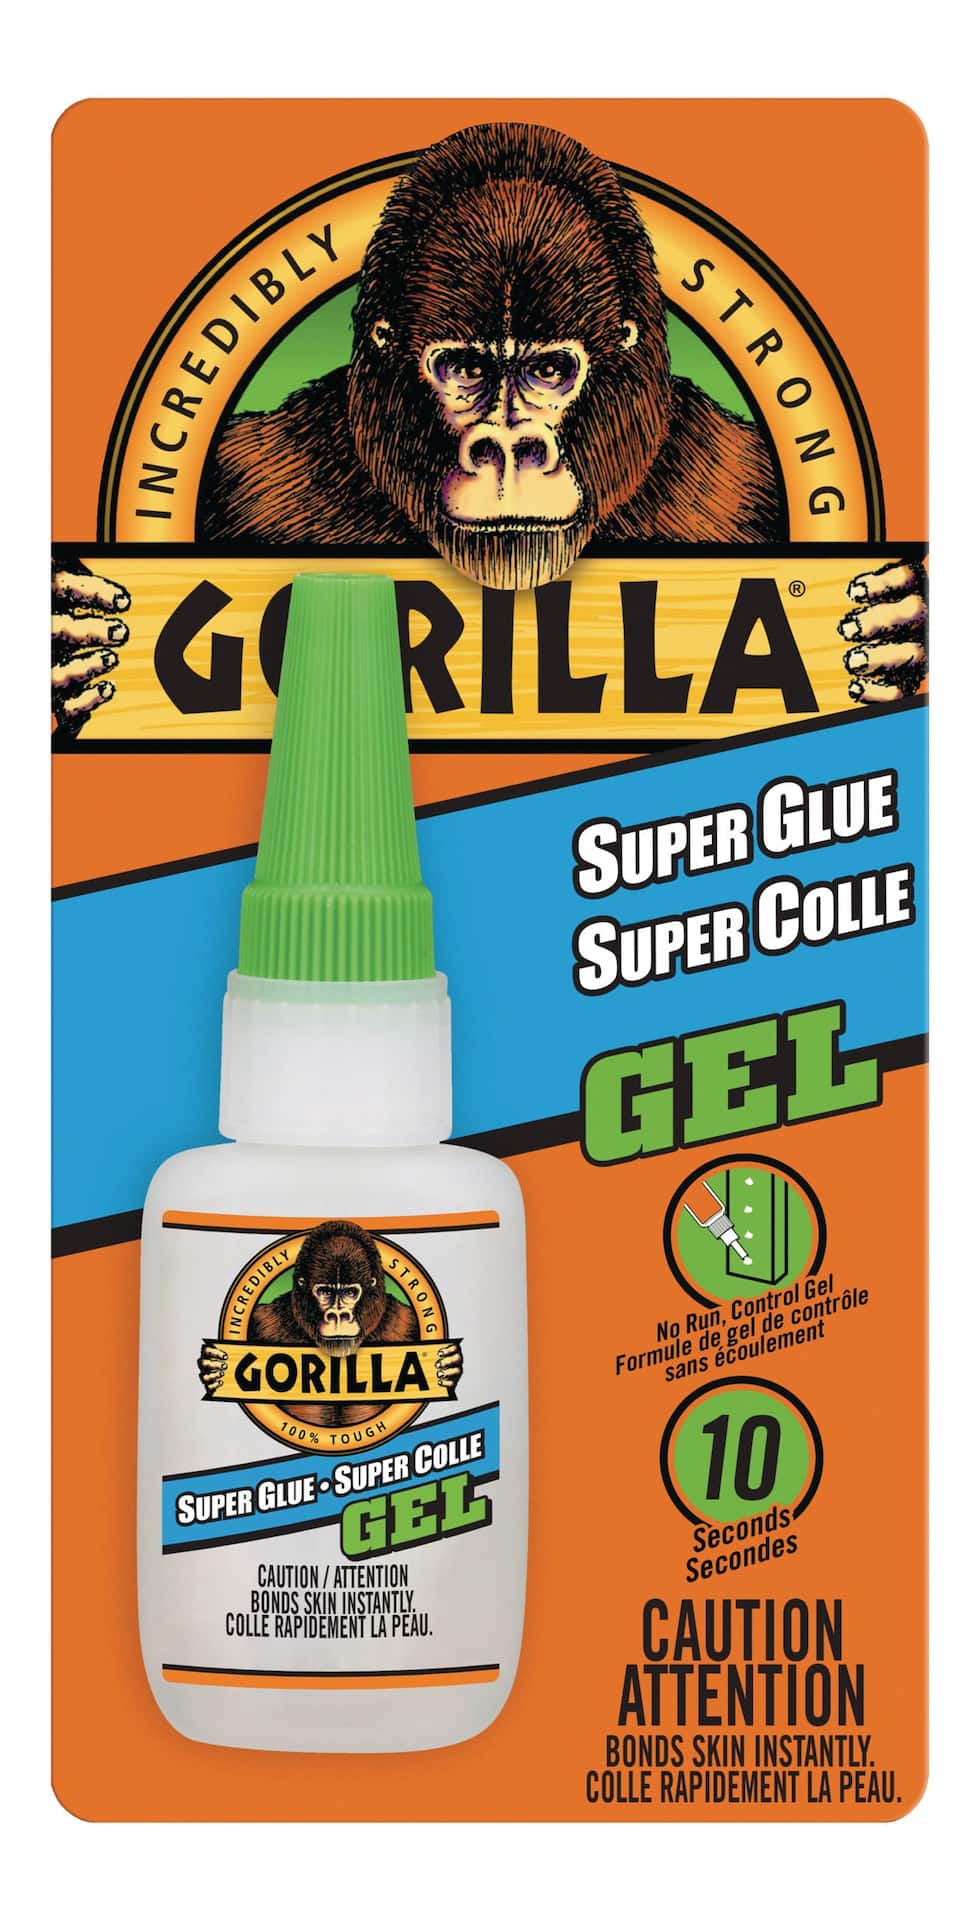 Instant Krazy Glue Single Use Gel Formula 4 Pack